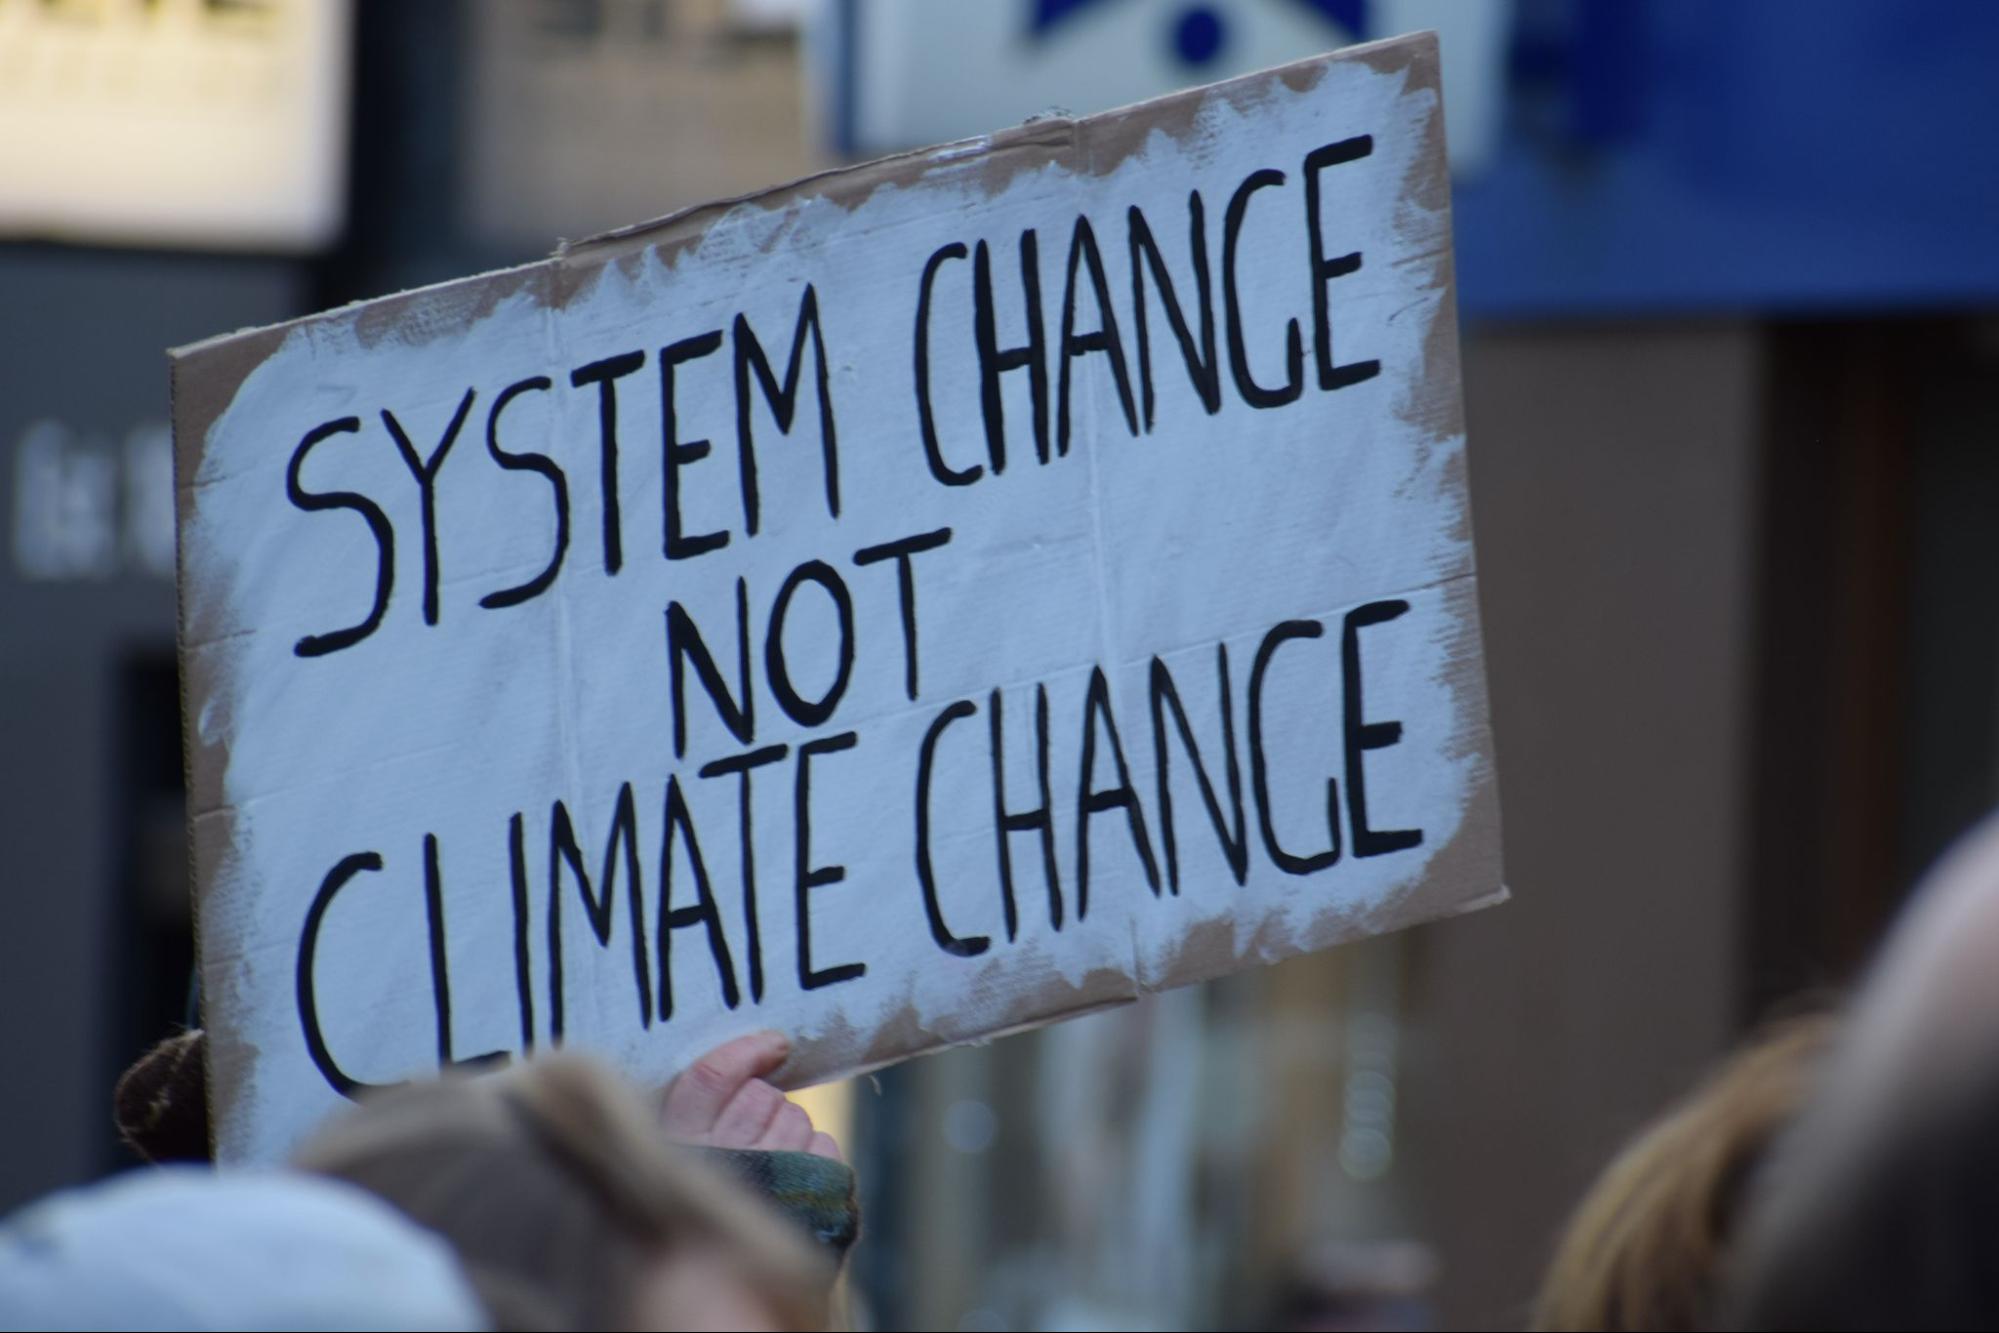 Panneau en carton portant des mots peints affirmant : "System change notclimatechange"